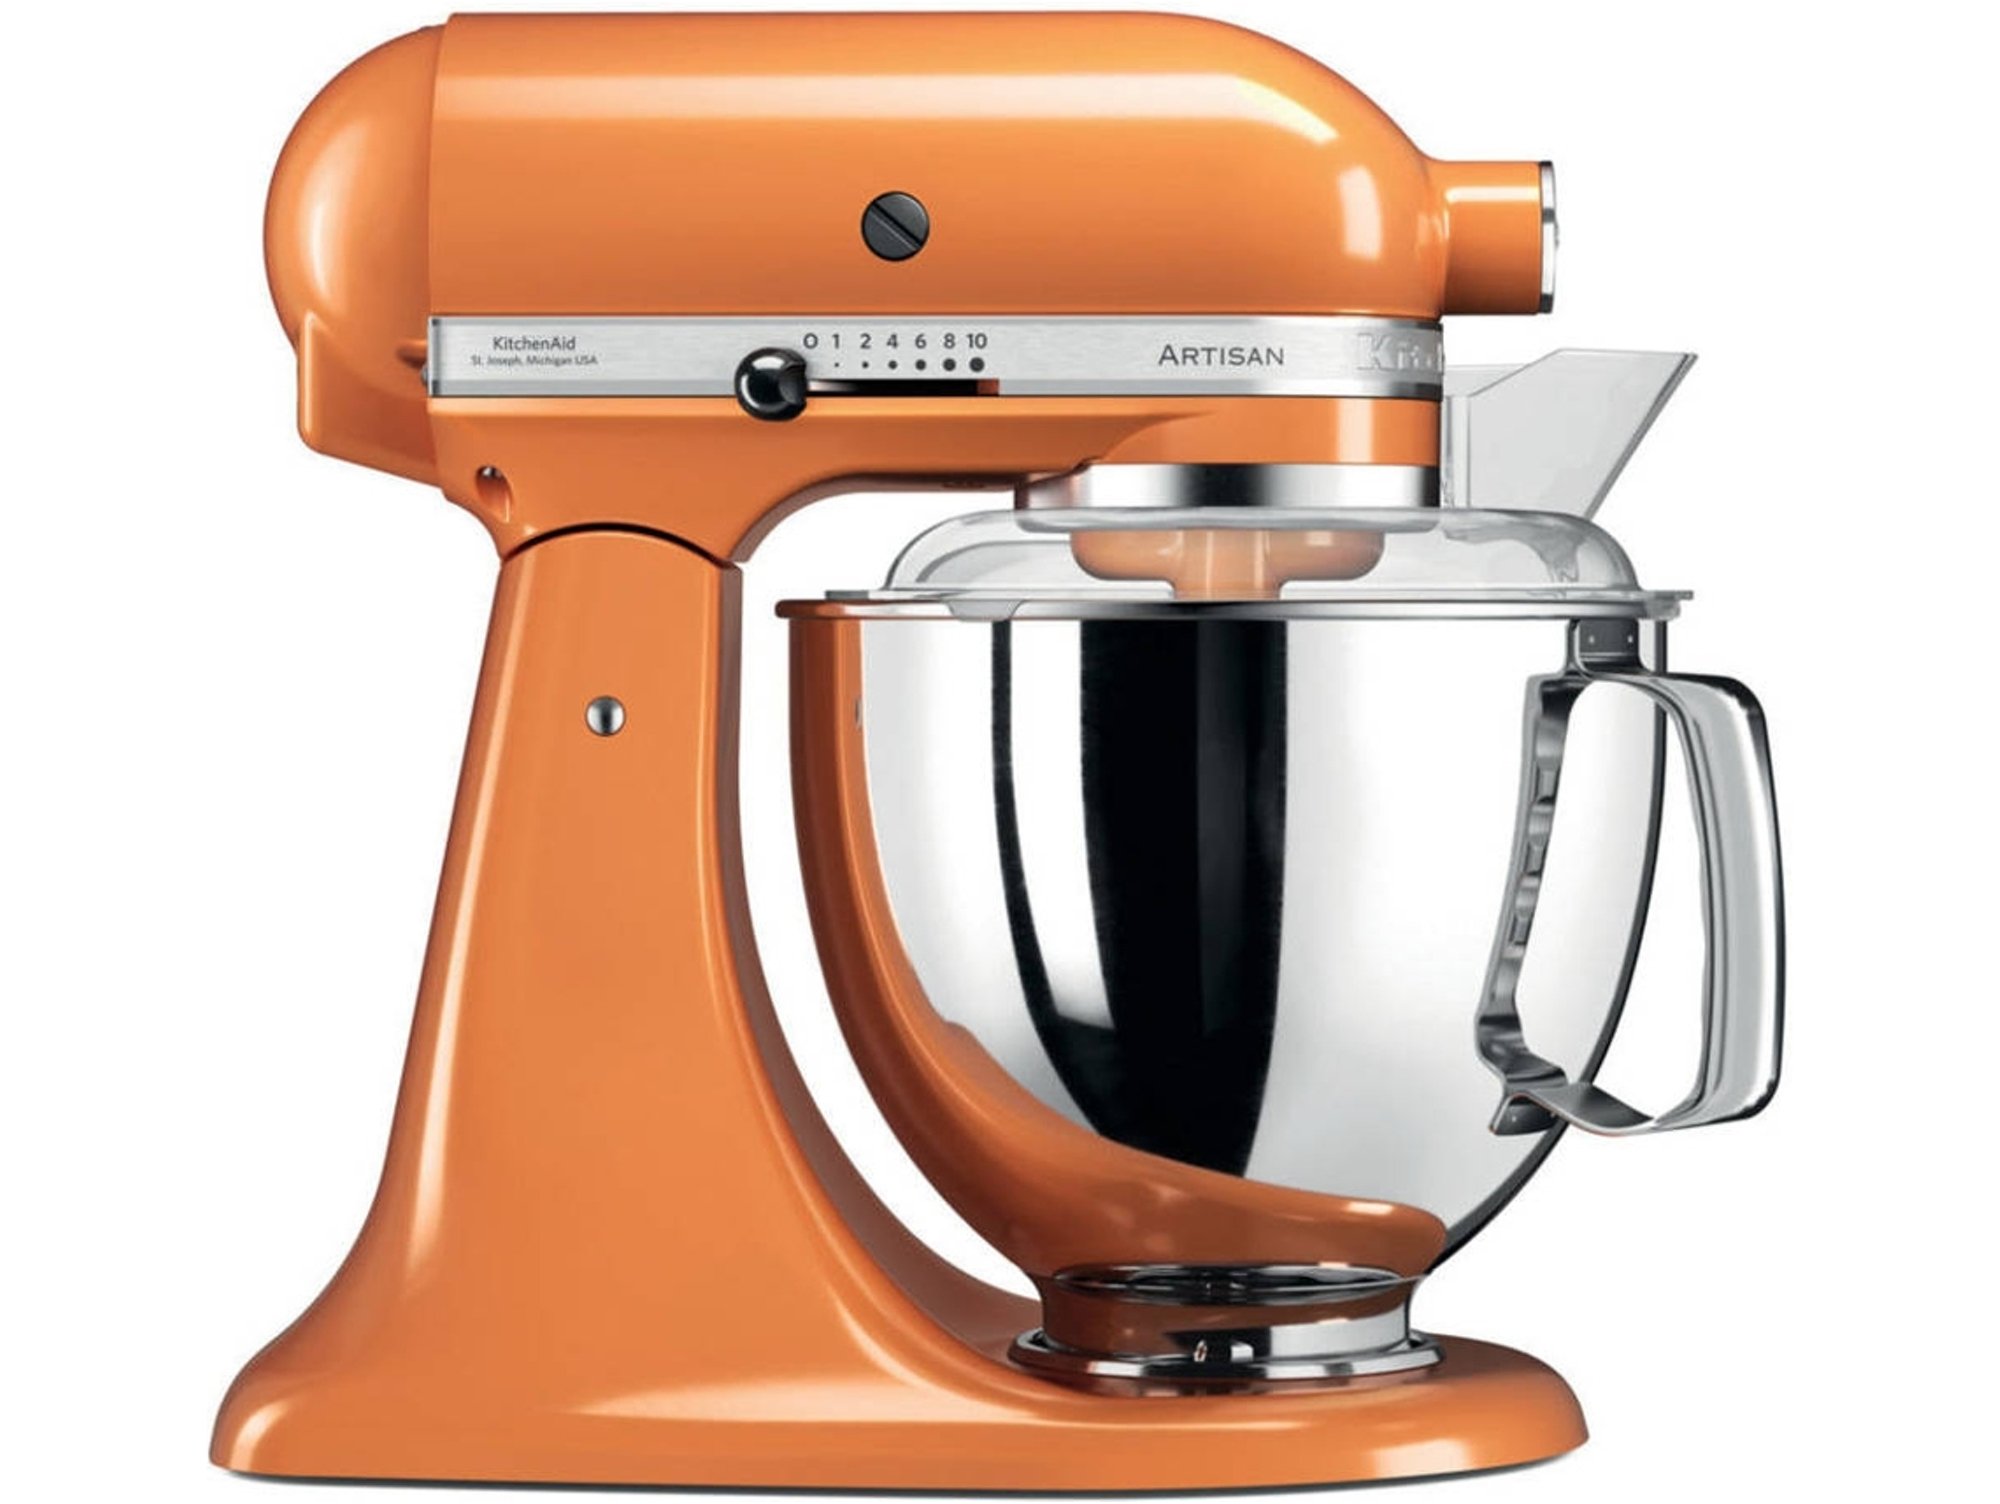 Robot De Cocina linea artisan mandarina kitchen aid 5ksm175psetg 48 naranja palanca 220 rpm 1454 5ksm175 4.8 300 4